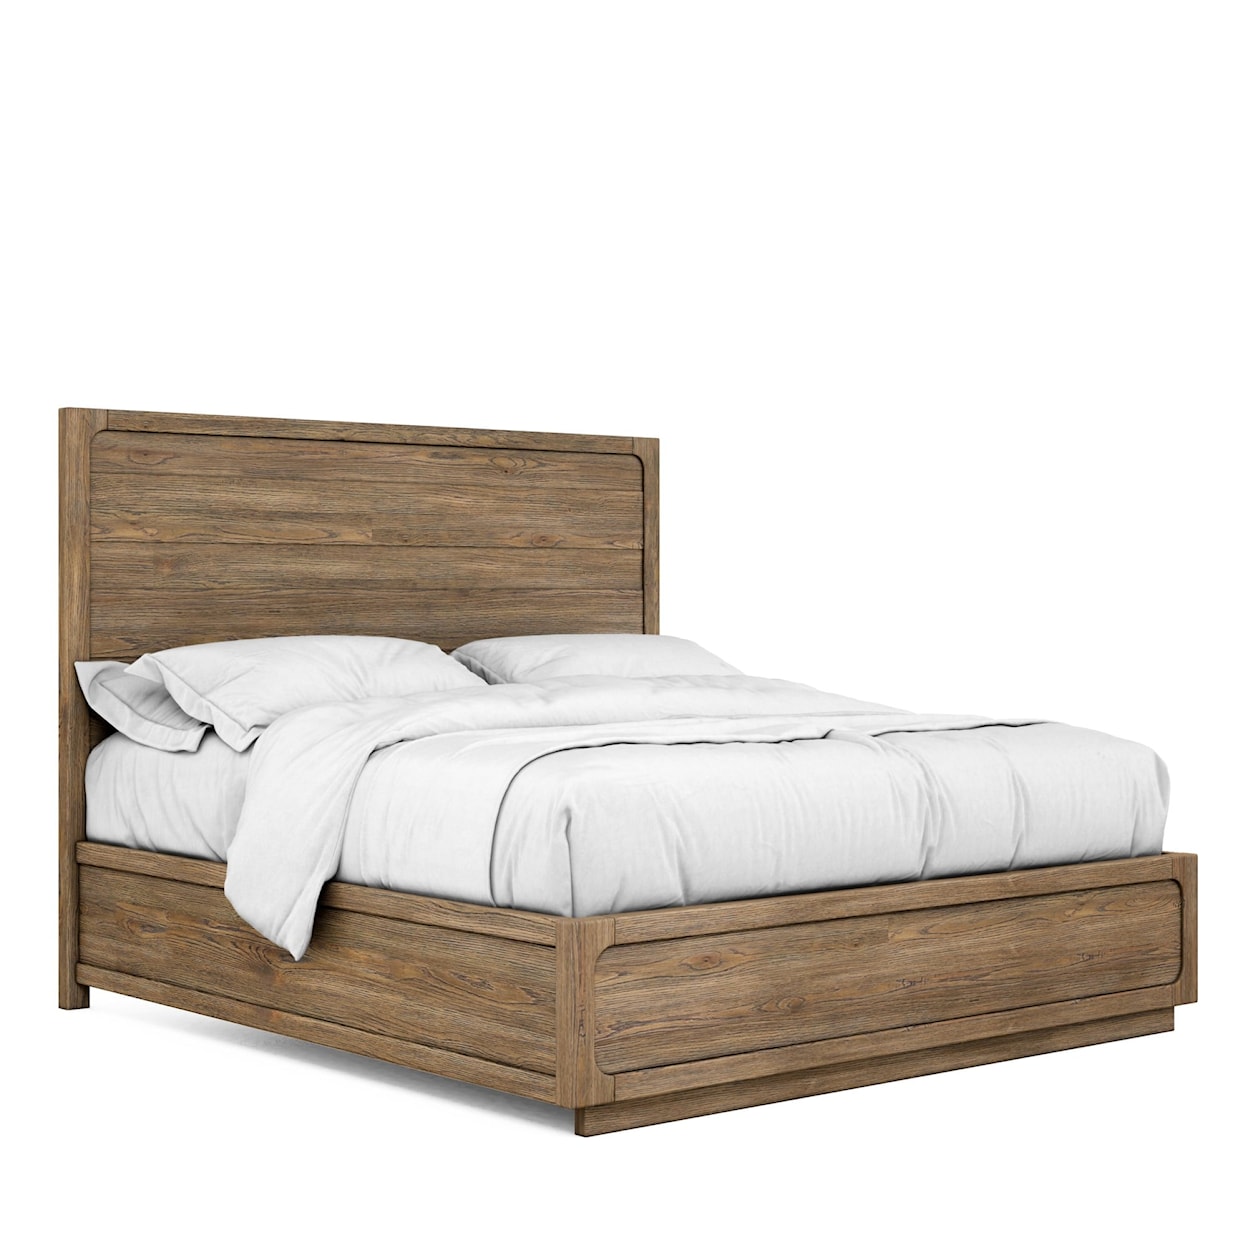 A.R.T. Furniture Inc 319 - Fremont 5PC King Bedroom Set